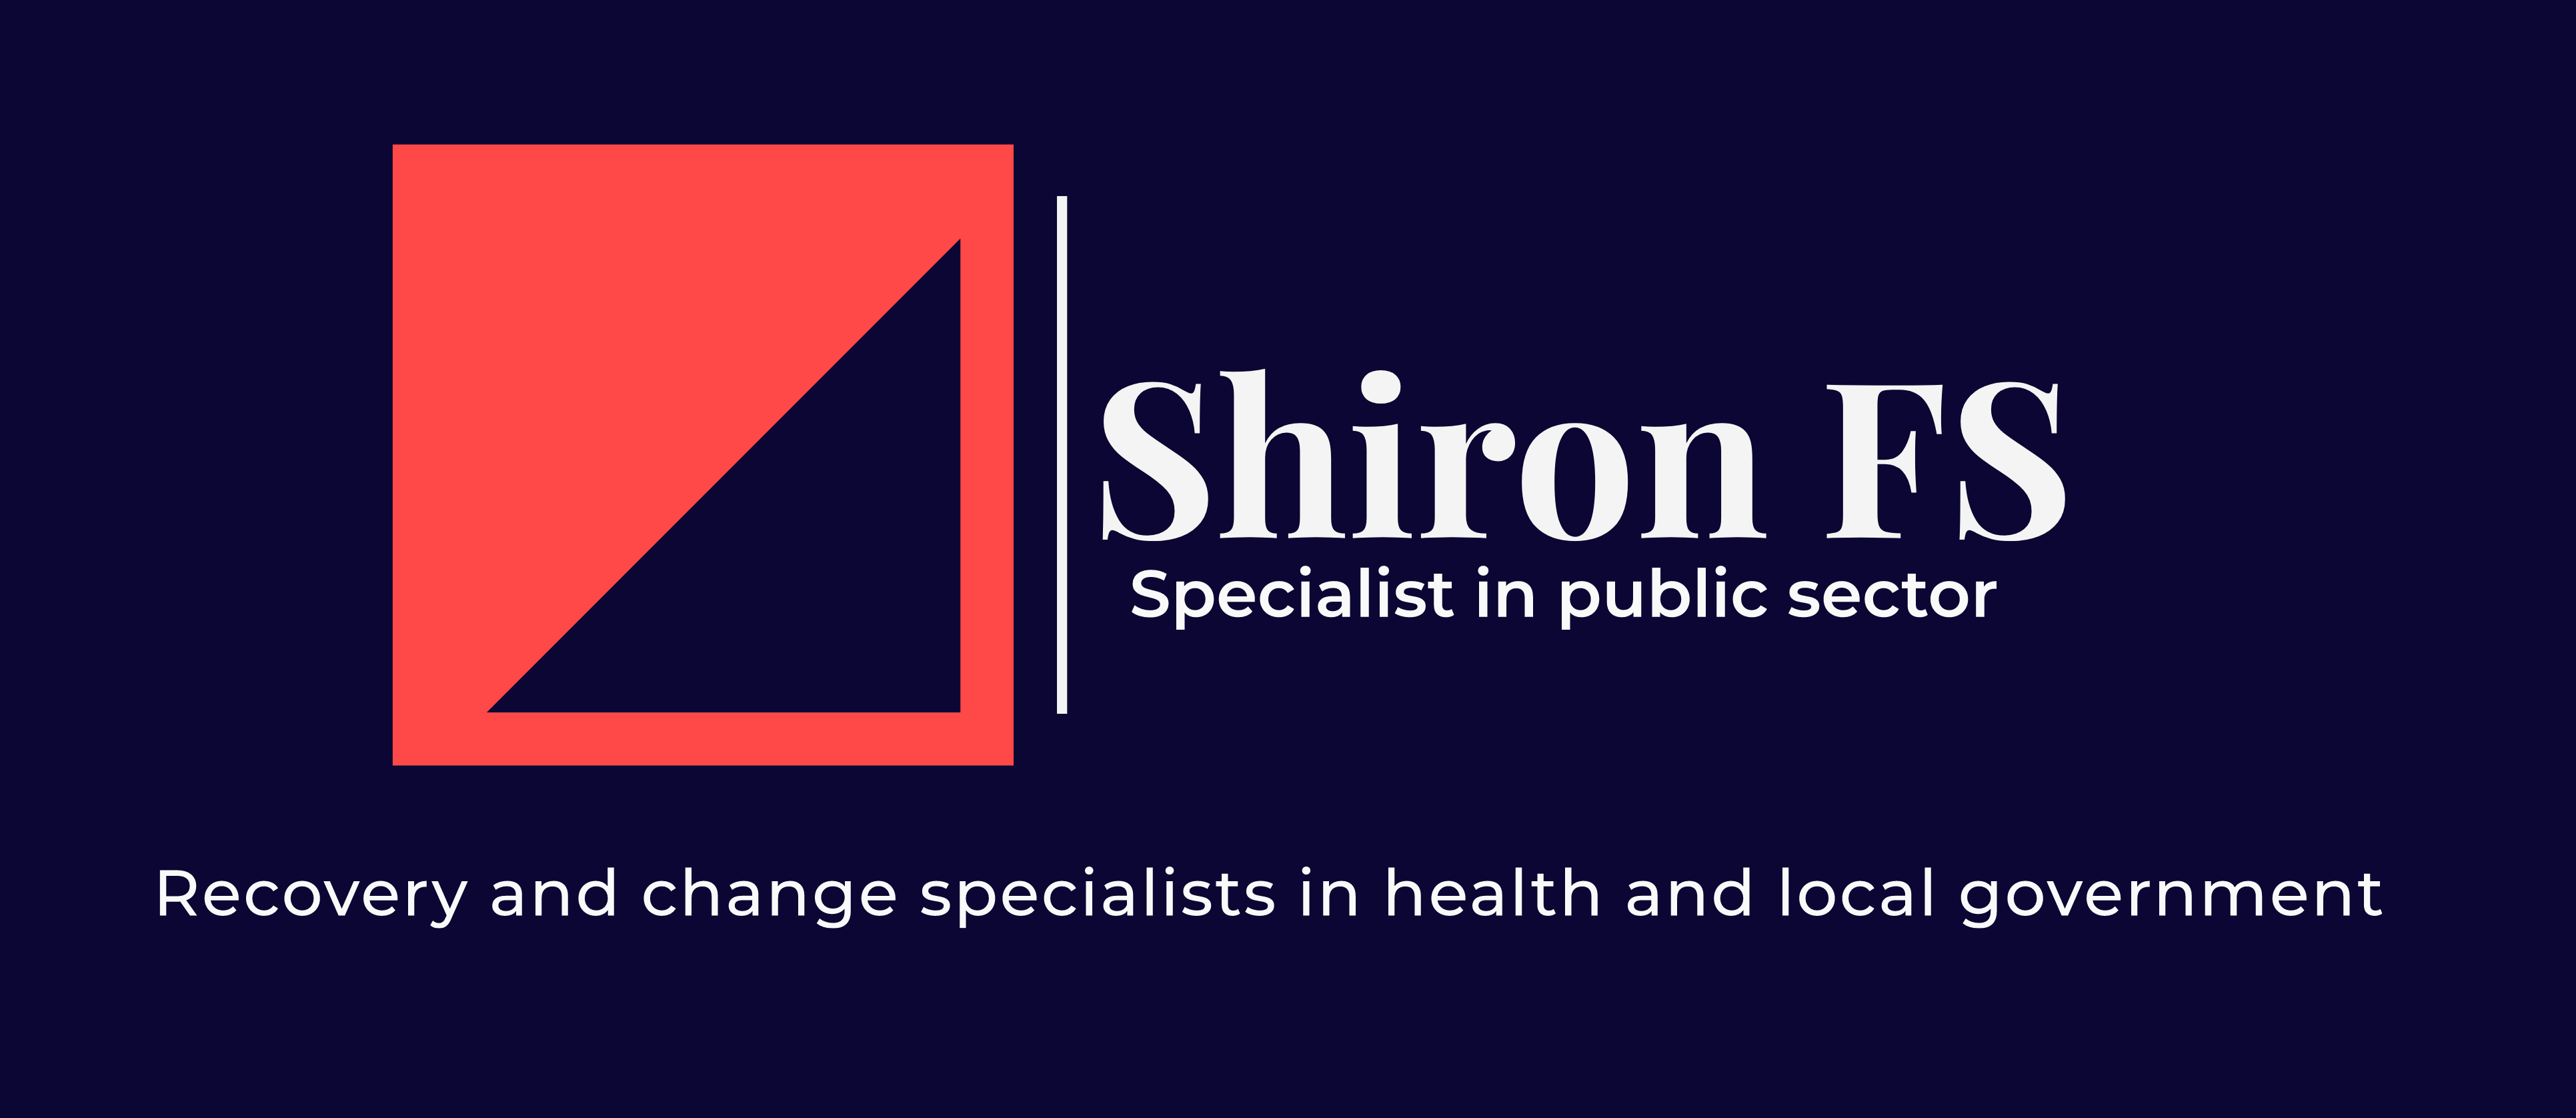 Shiron FS logo